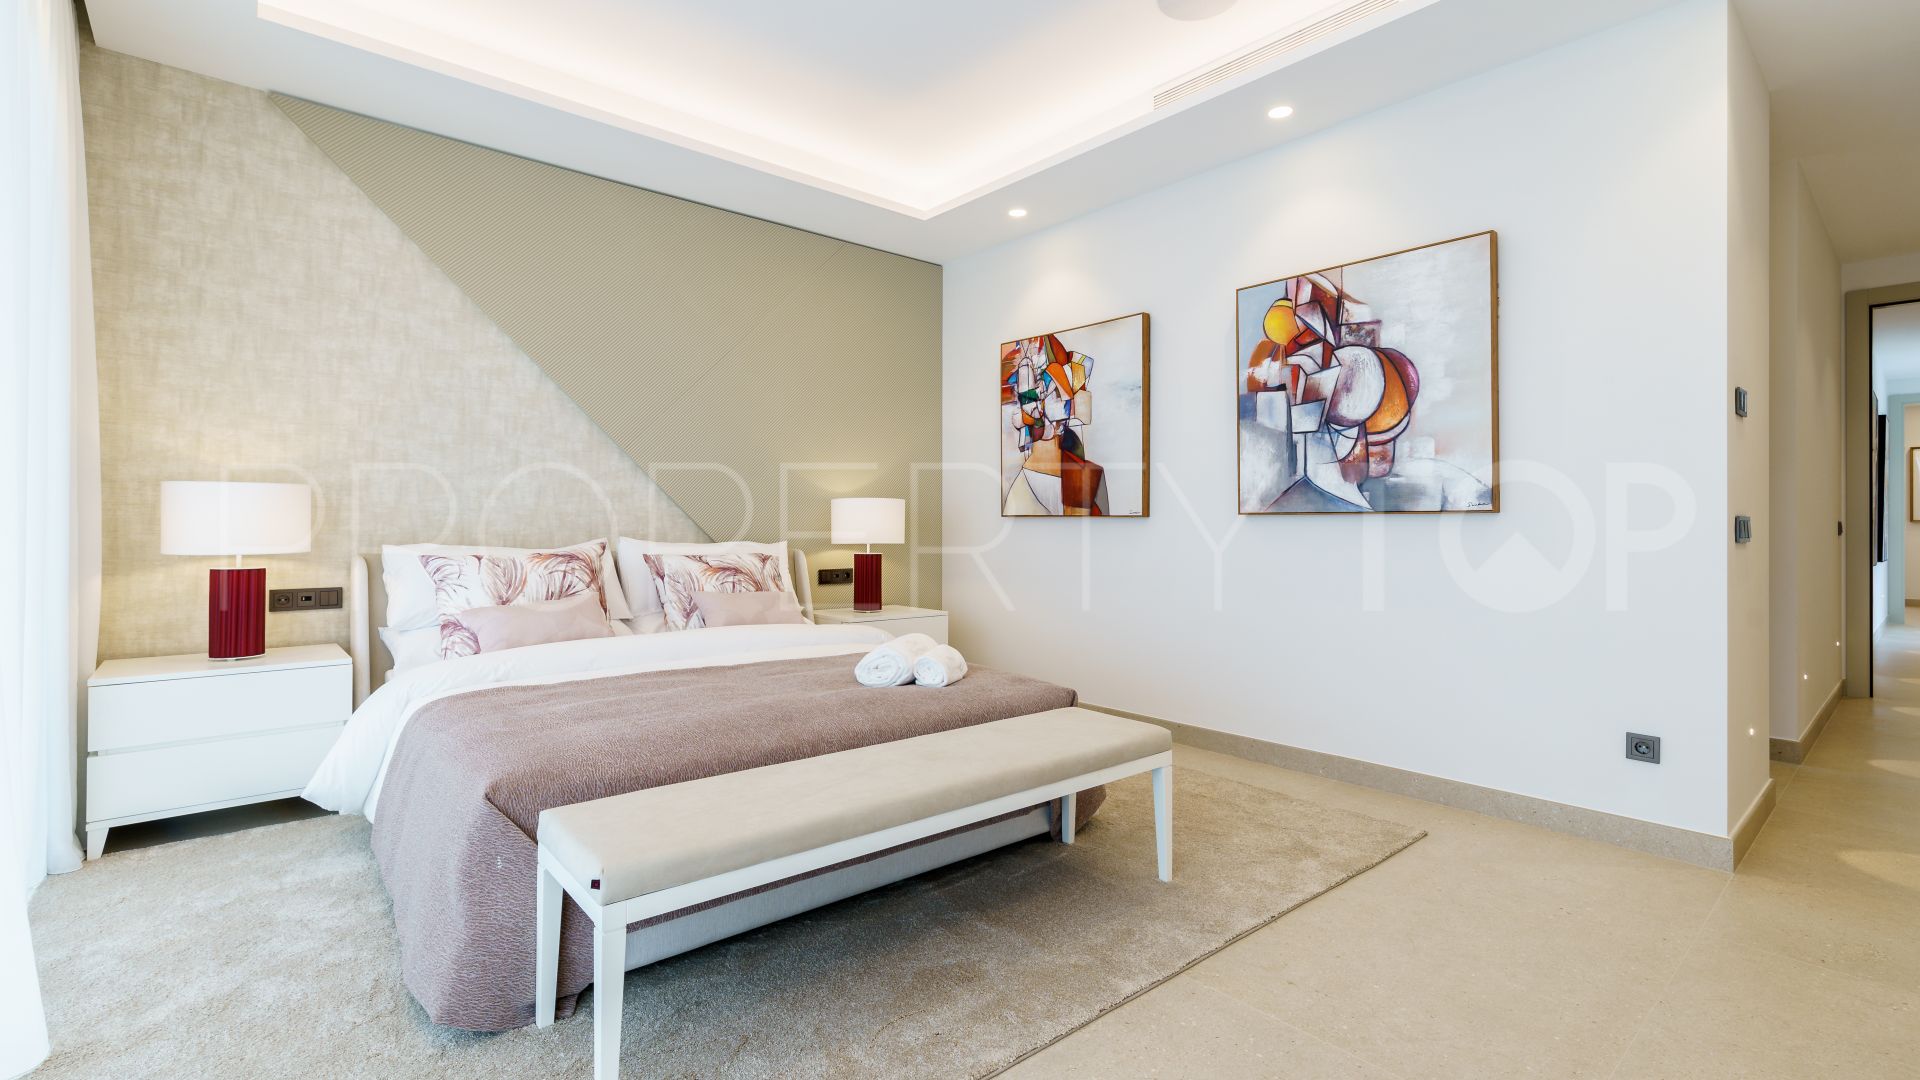 6 bedrooms villa in La Zagaleta for sale